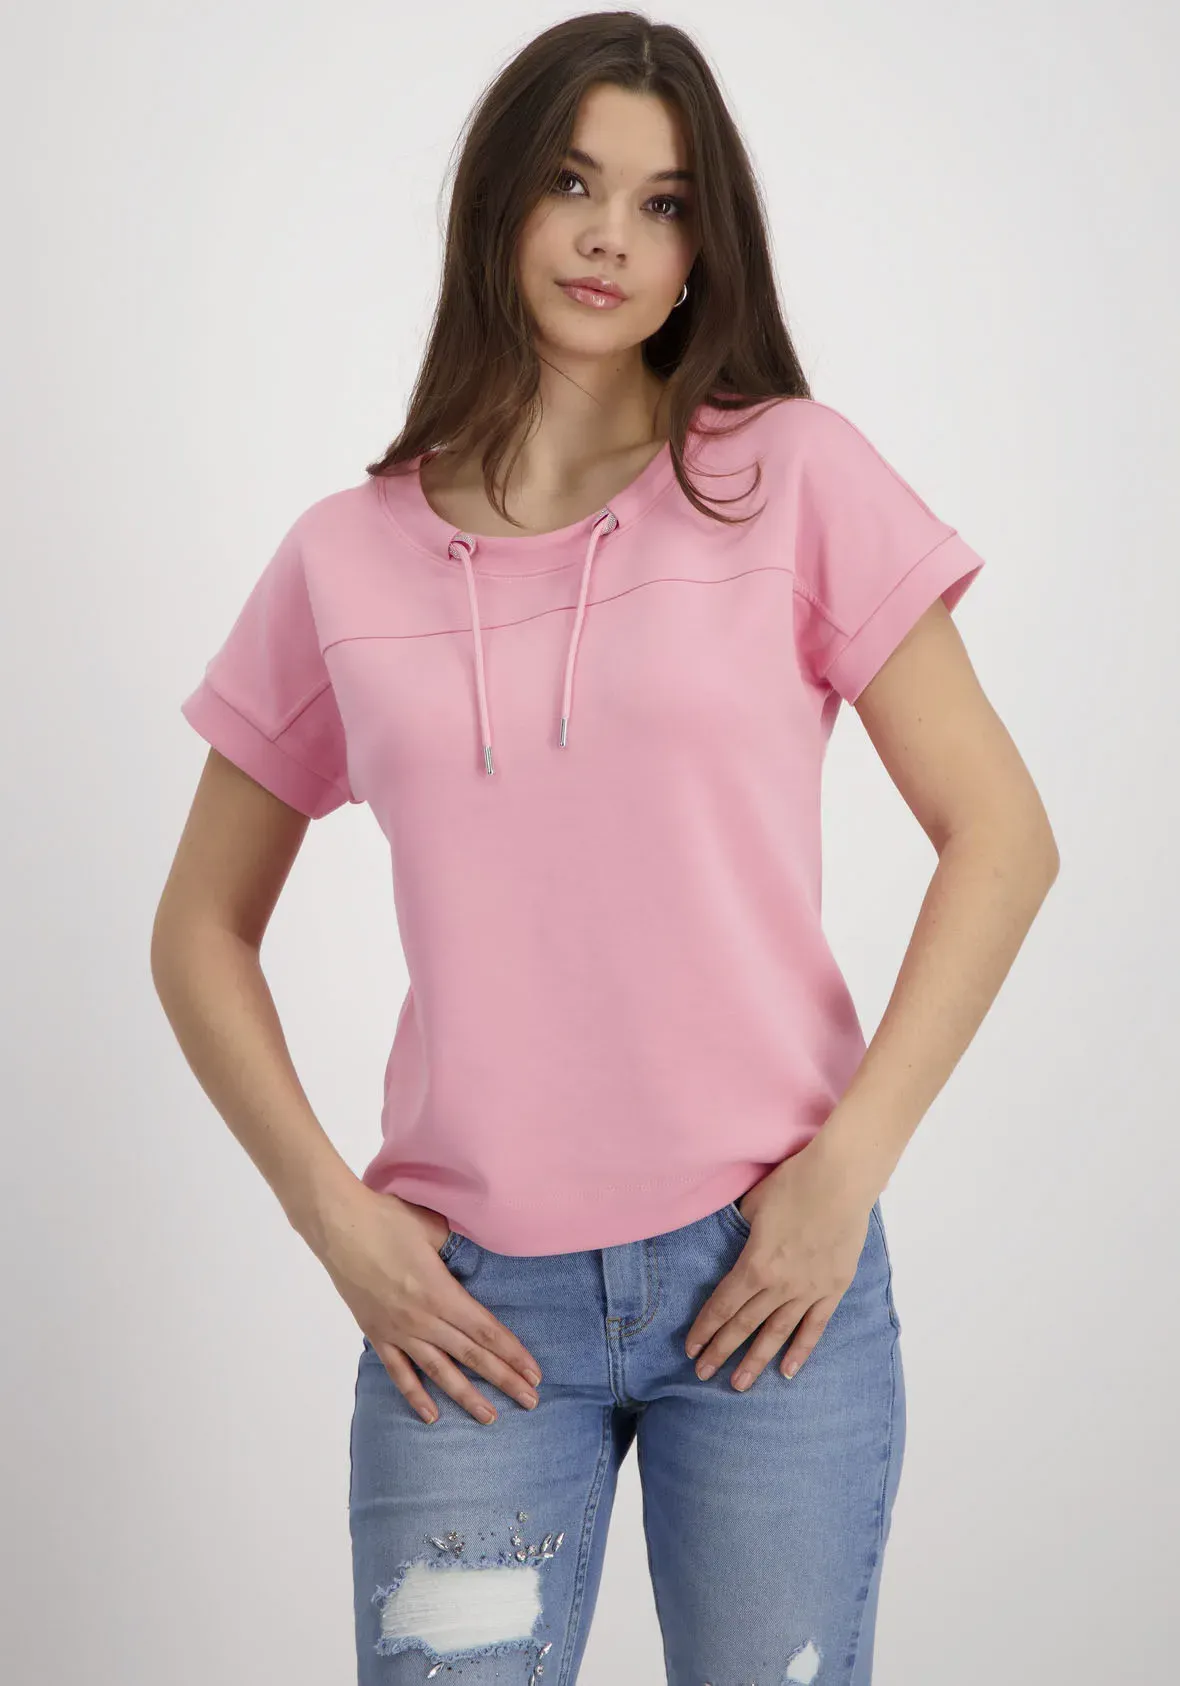 Monari Sweatshirt, mit Schmucköse Monari pink smoothie 46